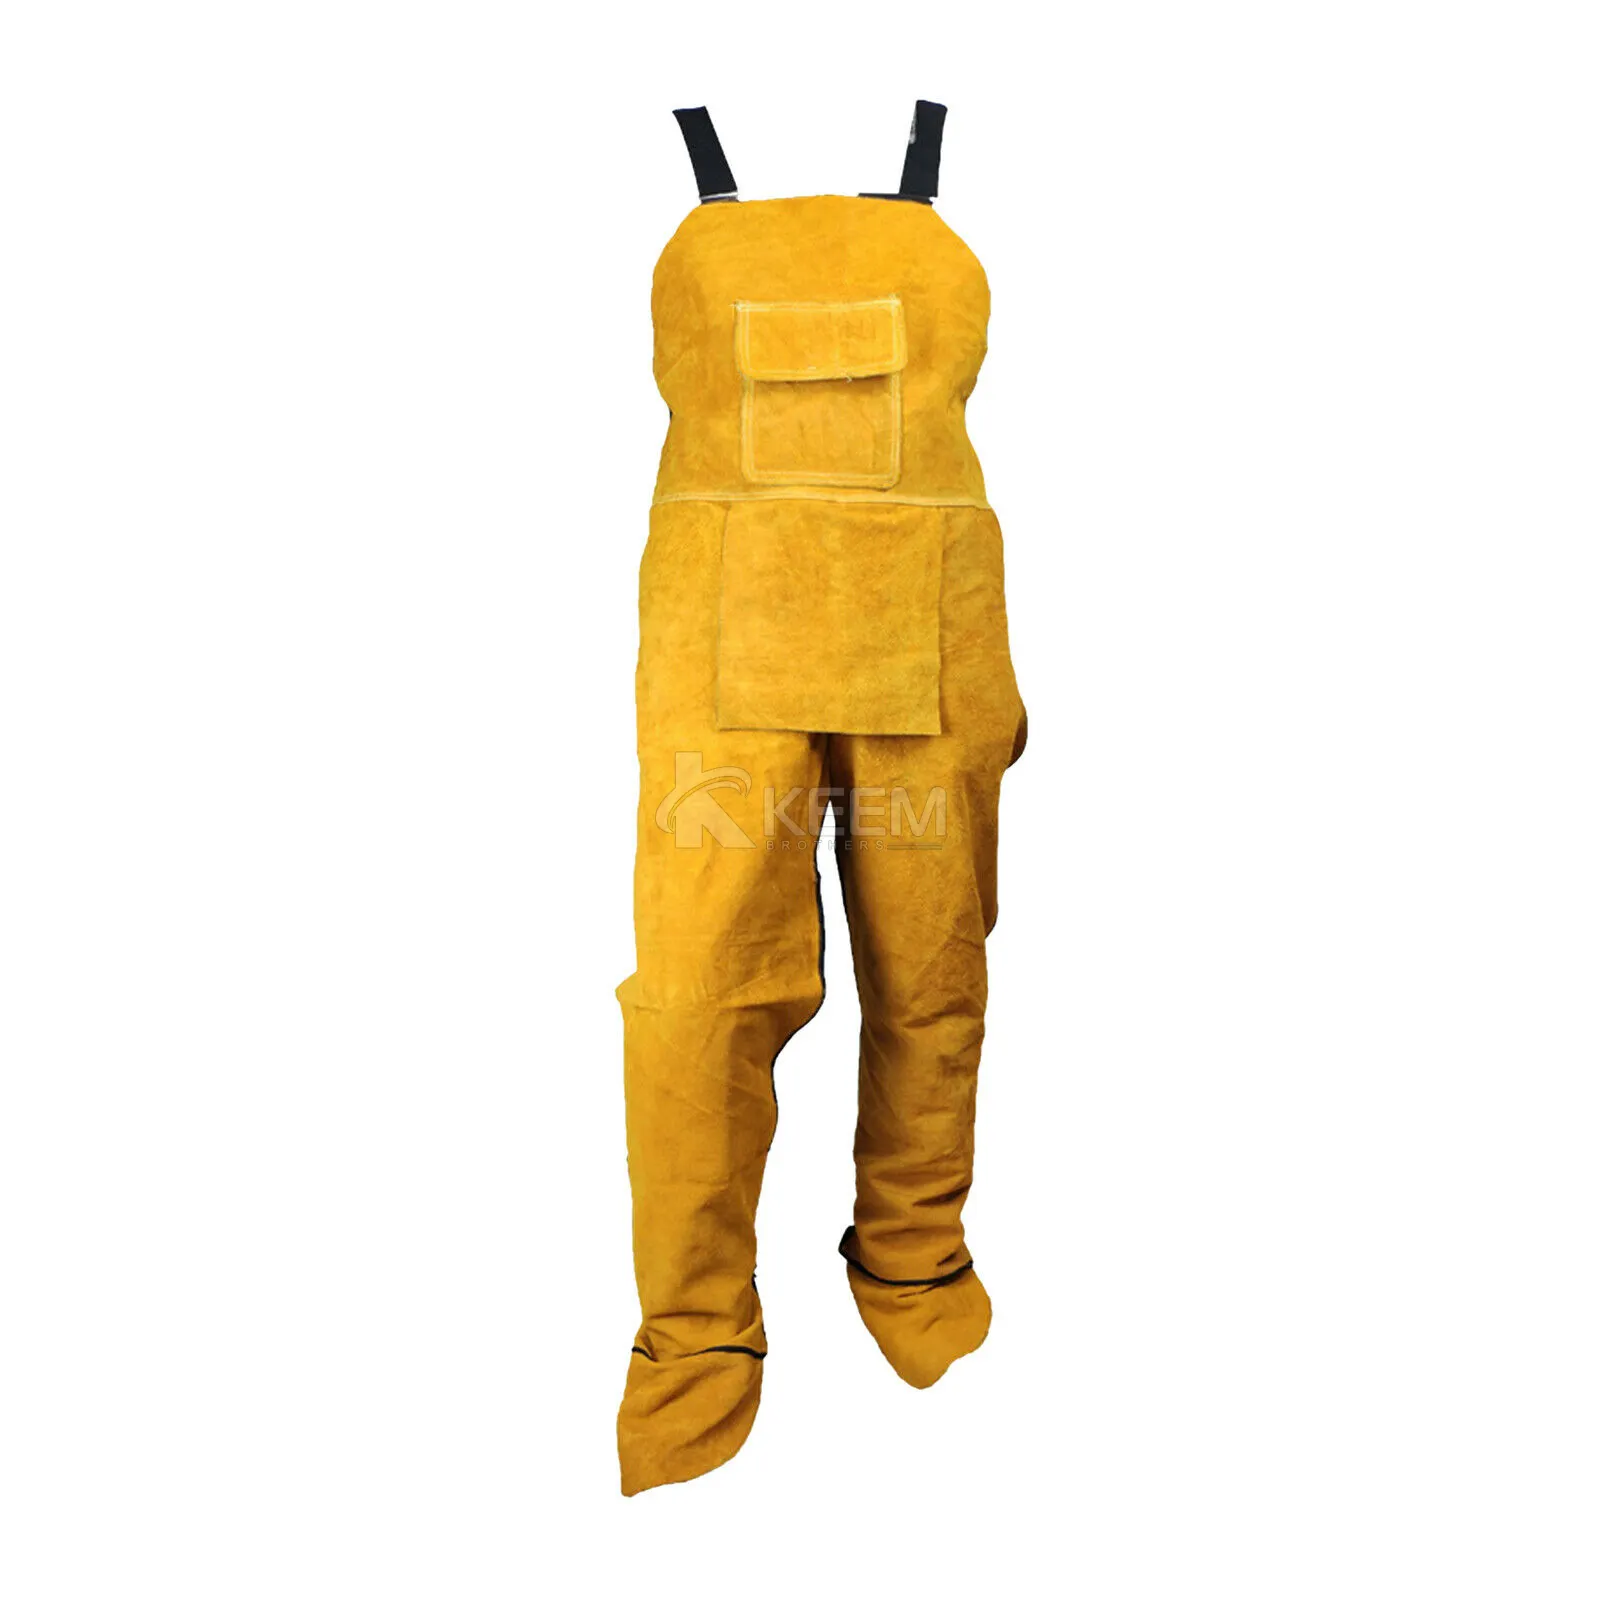 Heavy Duty Welding Clothing Welding Apron Split Leg Heat Flames Resistant Leather Welding Work Jackets